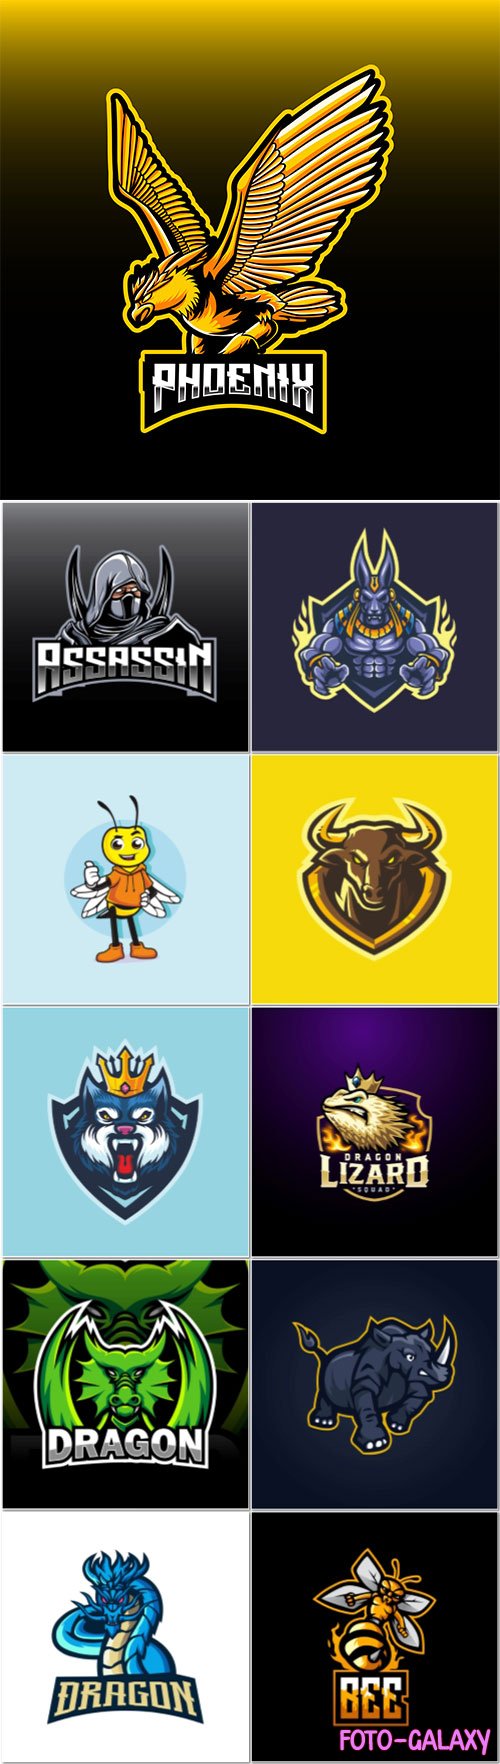 Mascot logo design set premium vector vol 1